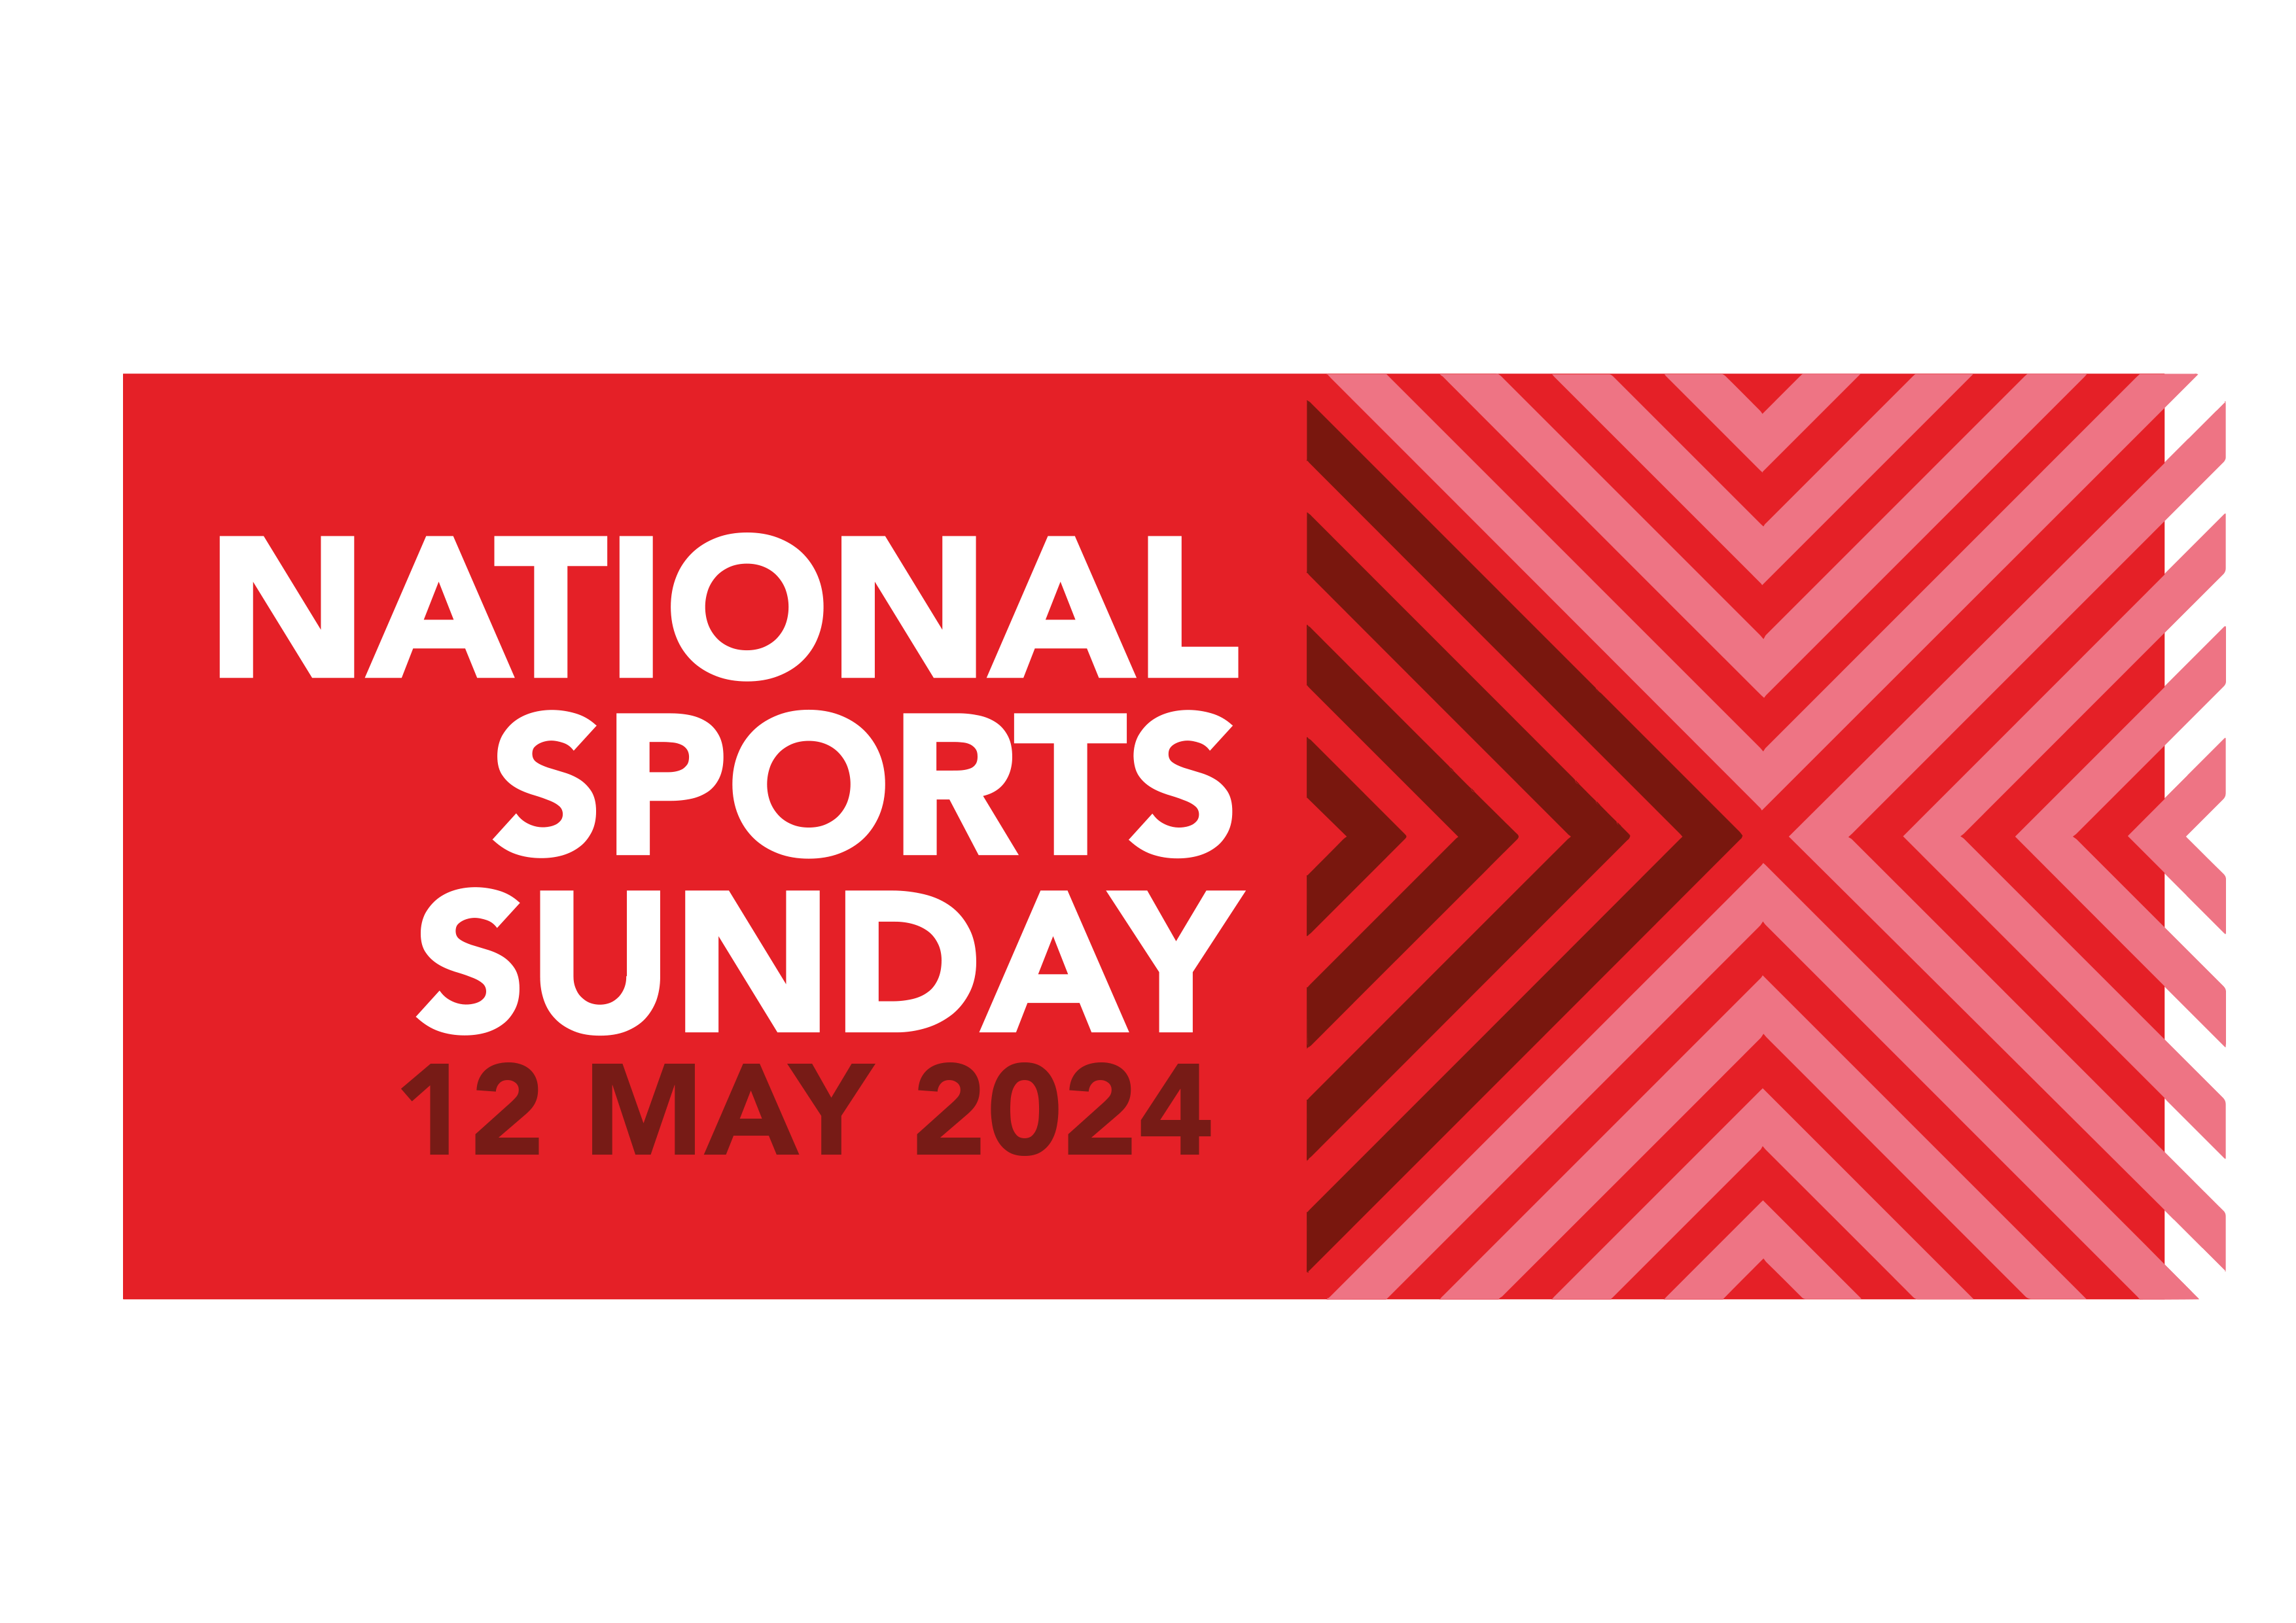 National Sports Sunday 2024